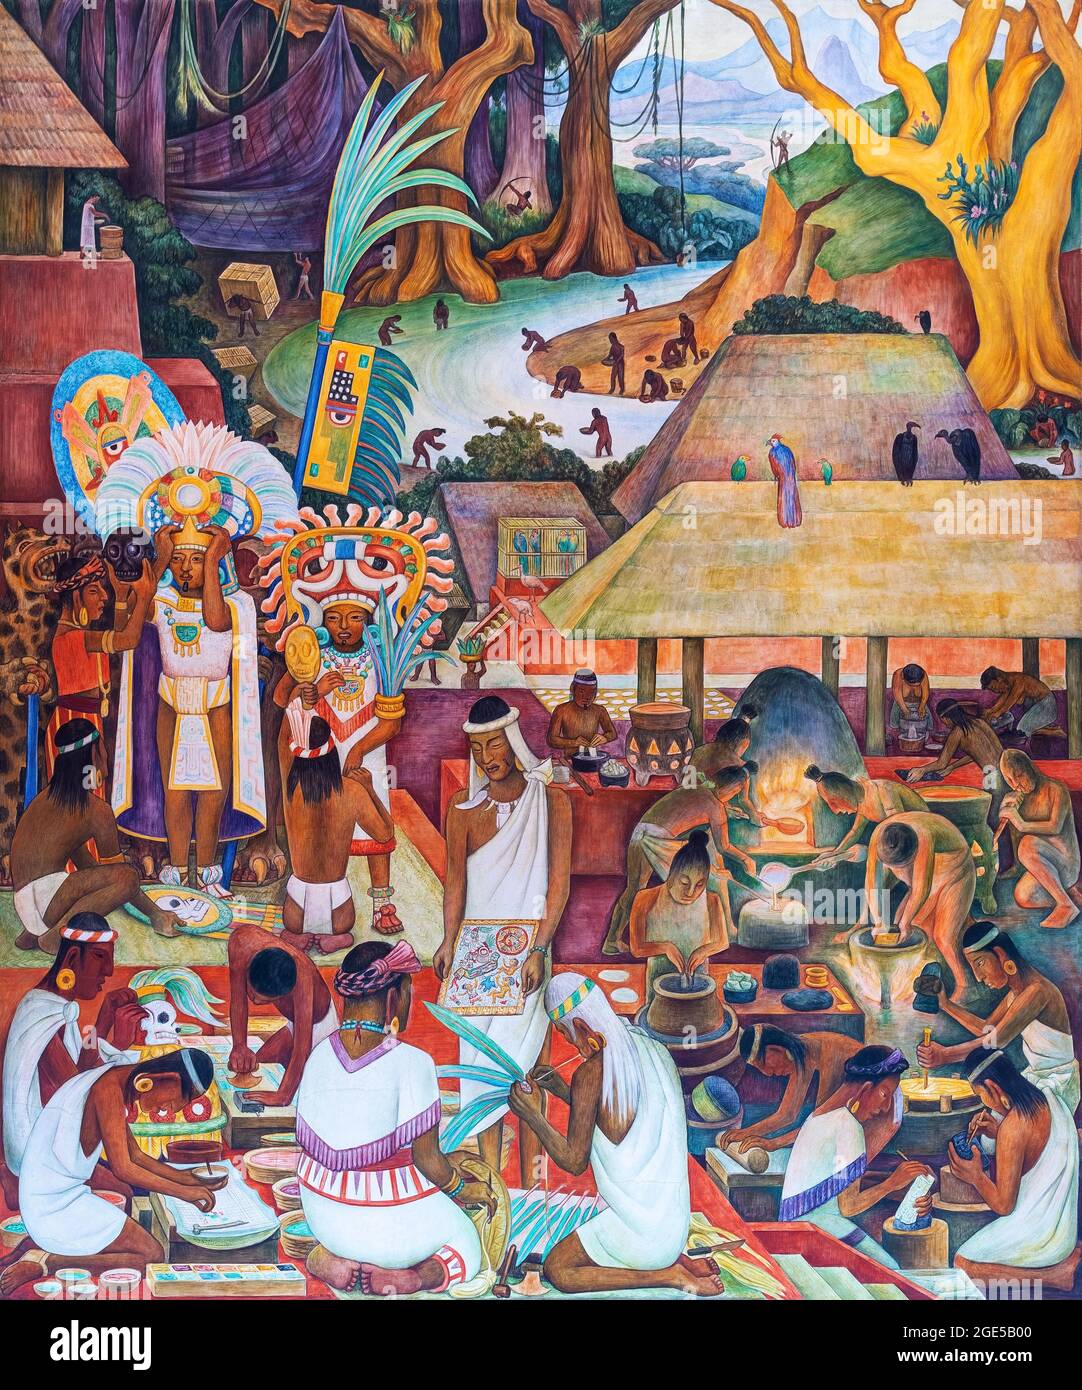 Arte y orfebrería (cultura zapoteca), mural de Diego Rivera en palacio presidencial, Ciudad de México, México. Foto de stock